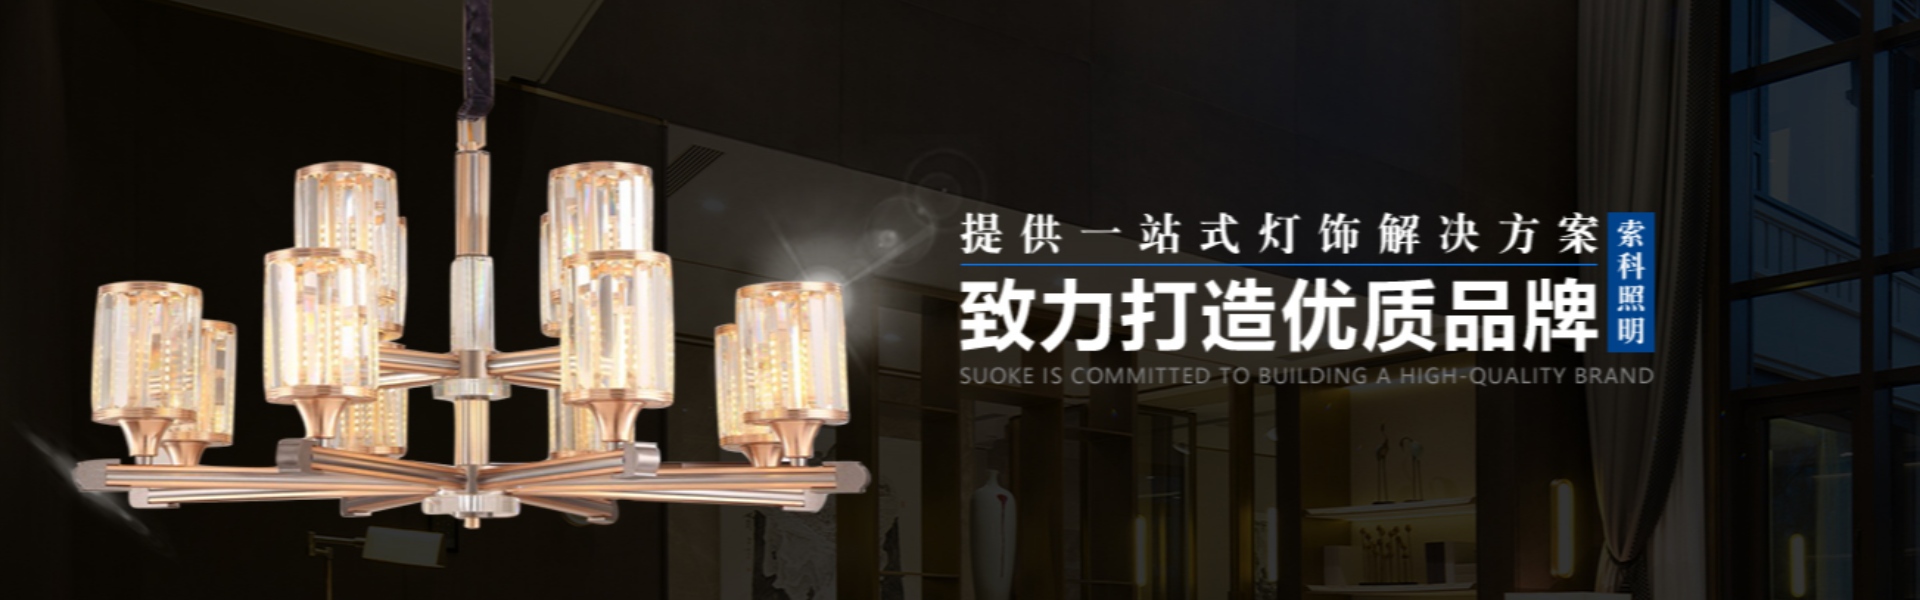 chiếu sáng gia đình, chiếu sáng ngoài trời, chiếu sáng mặt trời,Zhongshan Suoke Lighting Electric Co., Ltd.